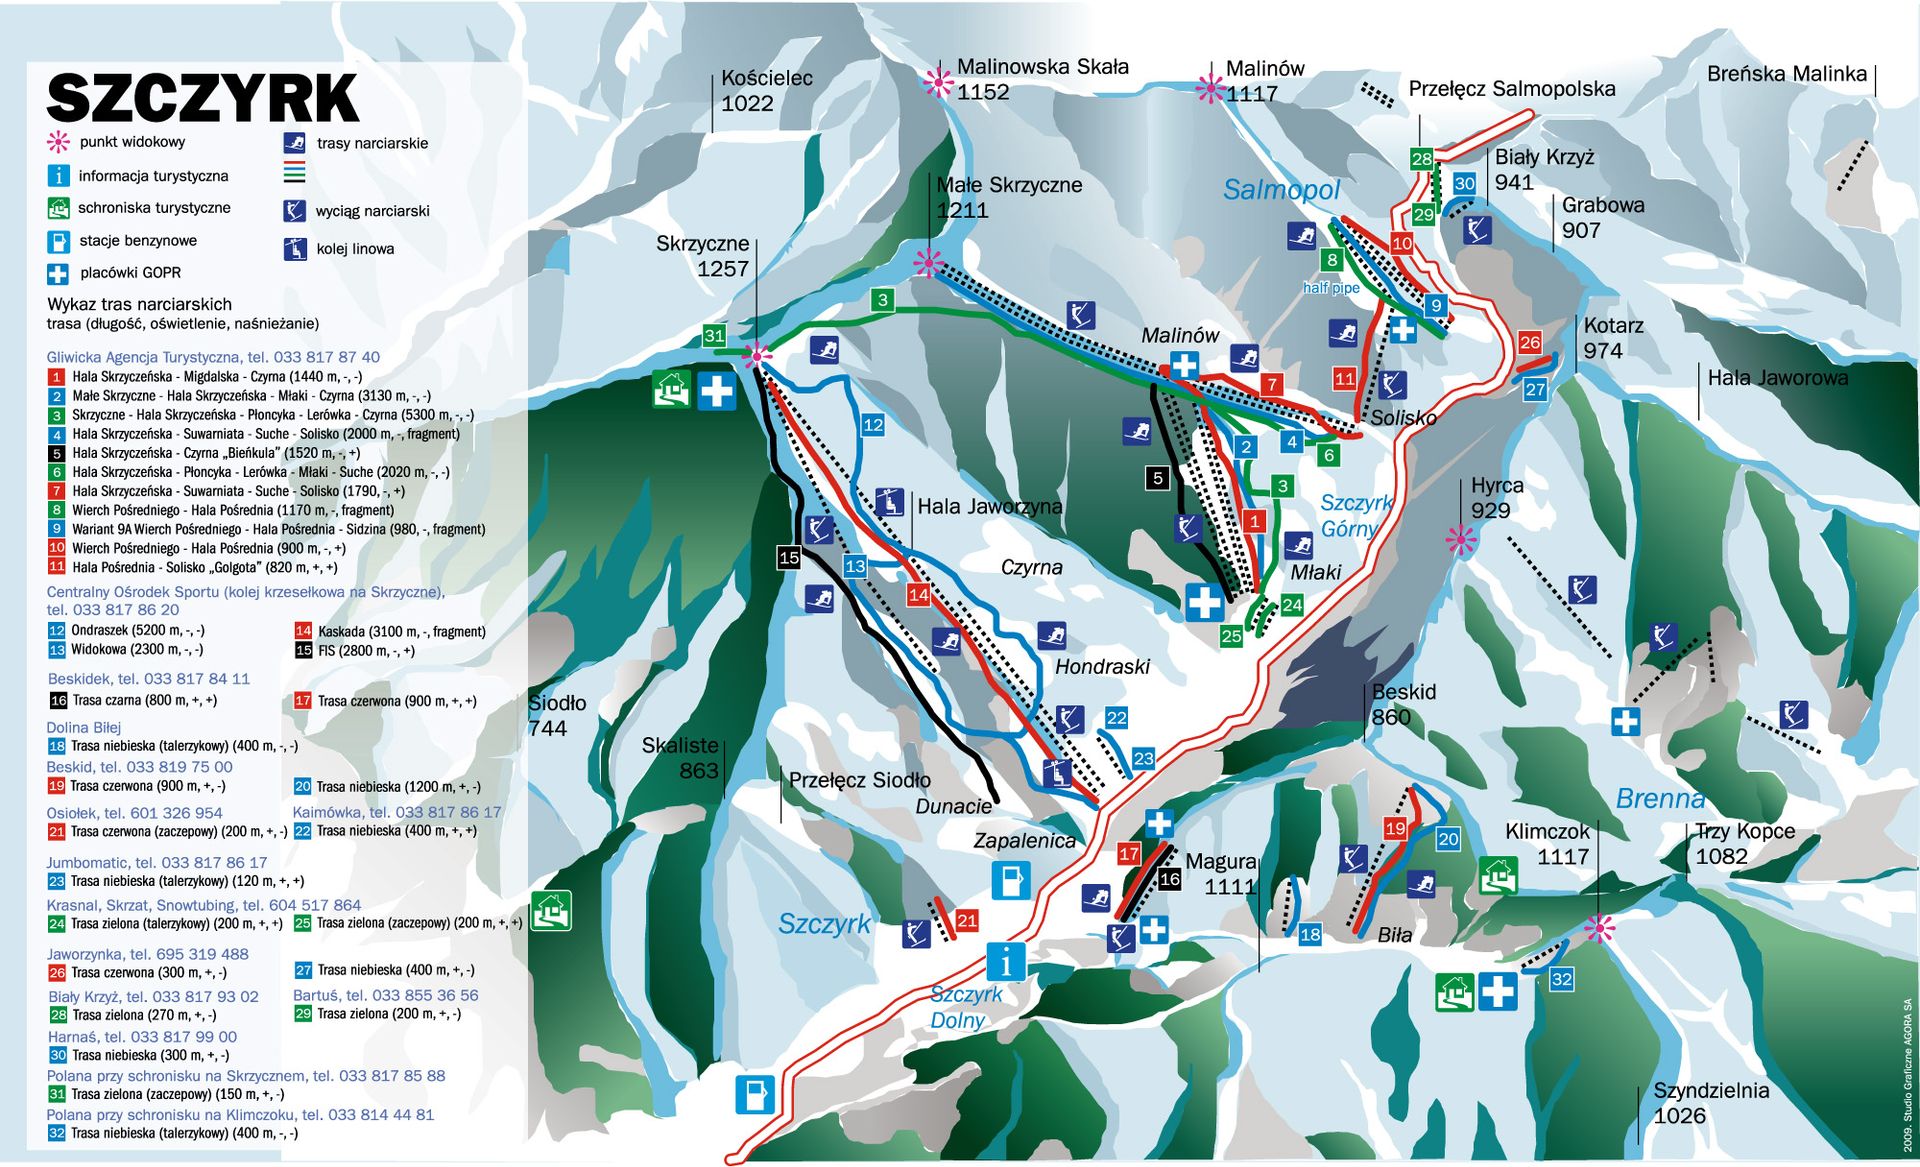  Najbliższy sezon narciarski pod znakiem beskidzkich inwestycji